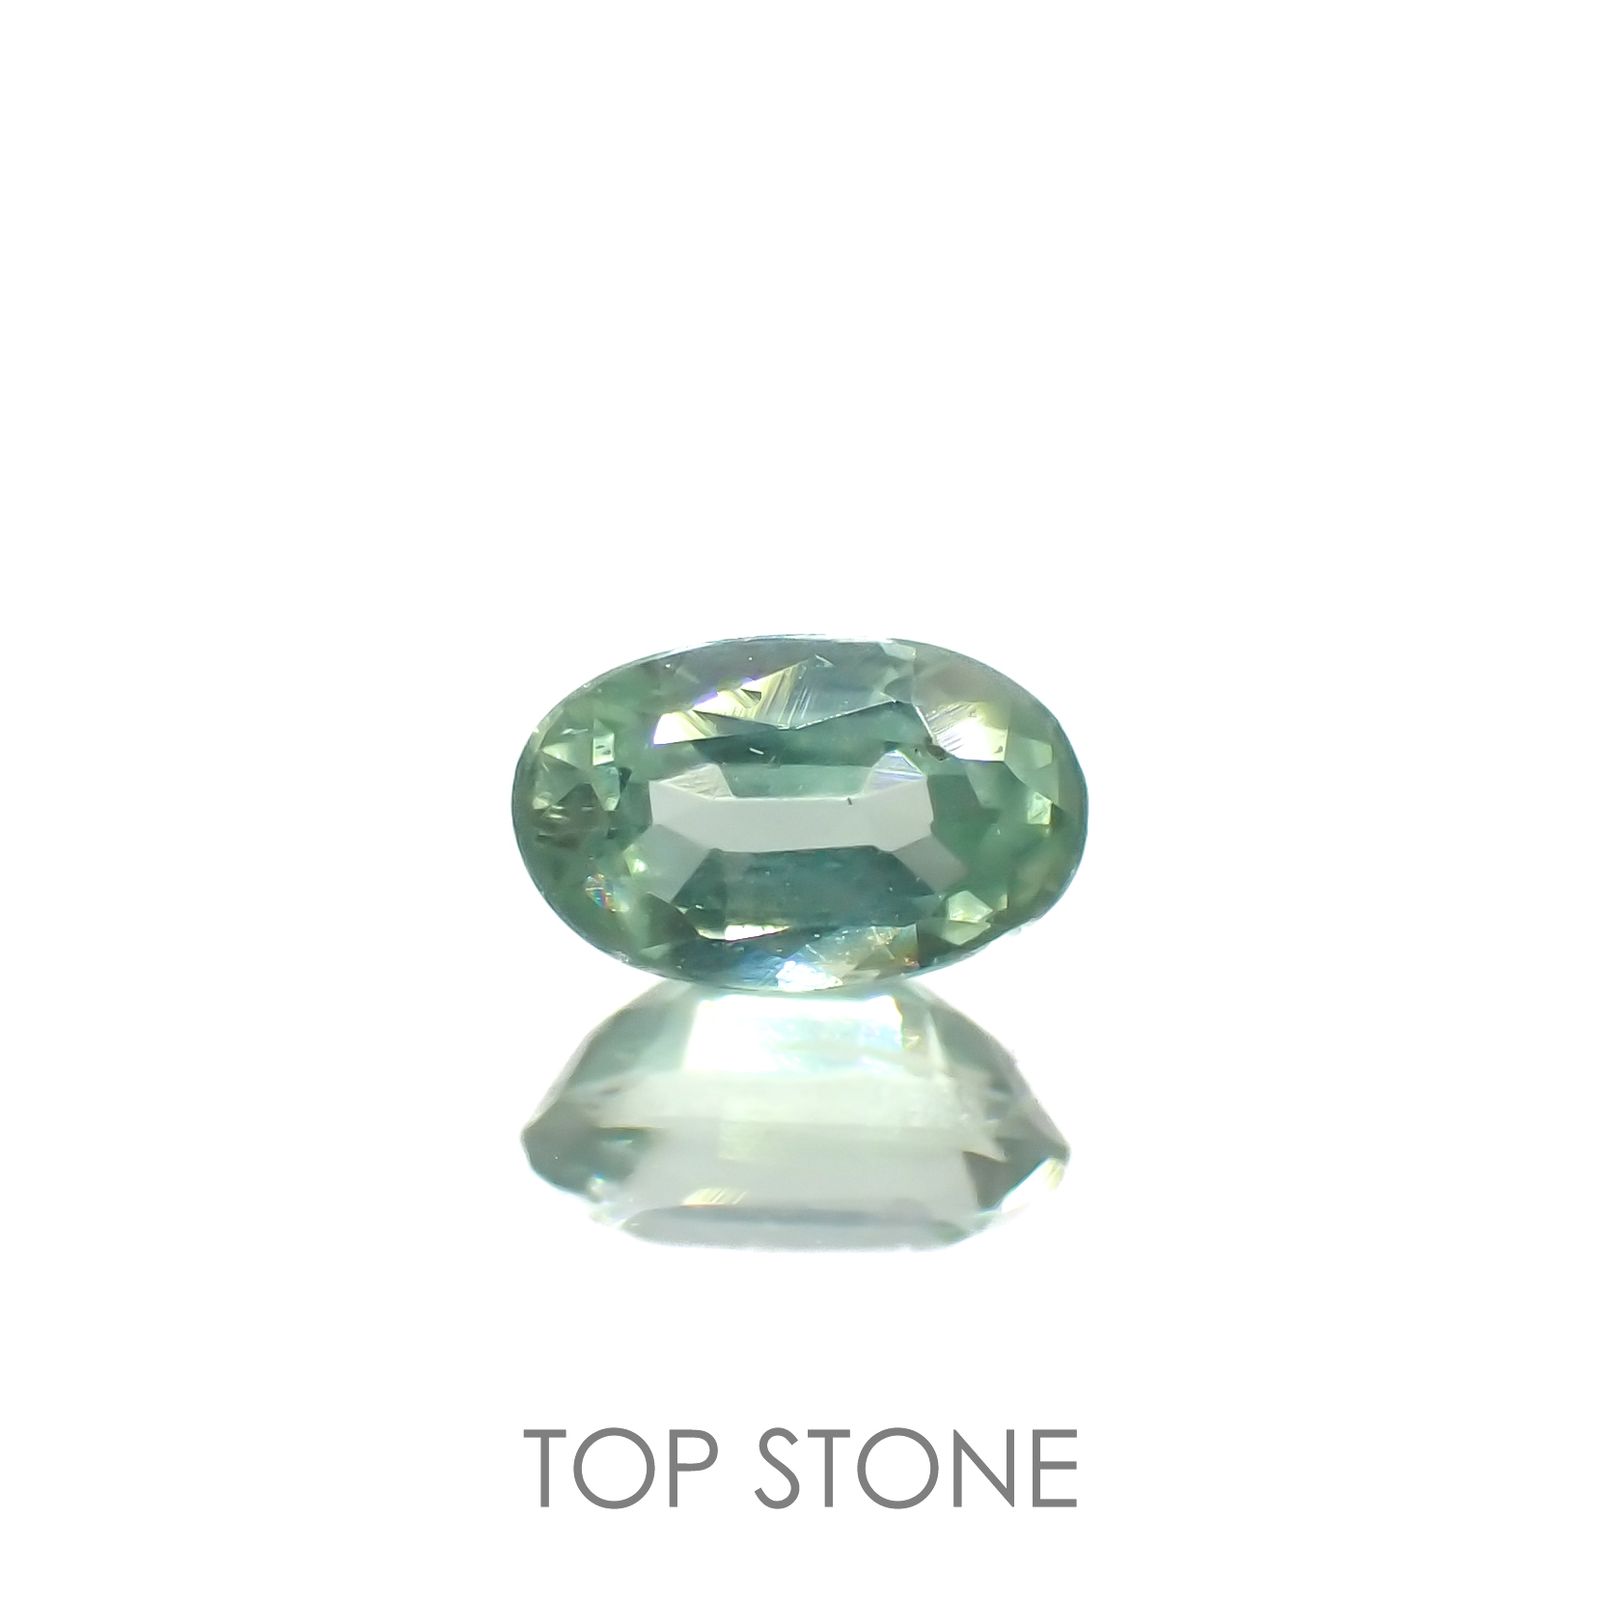 宝石名から探す / カイヤナイト 通販 | TOP STONE(トップストーン)